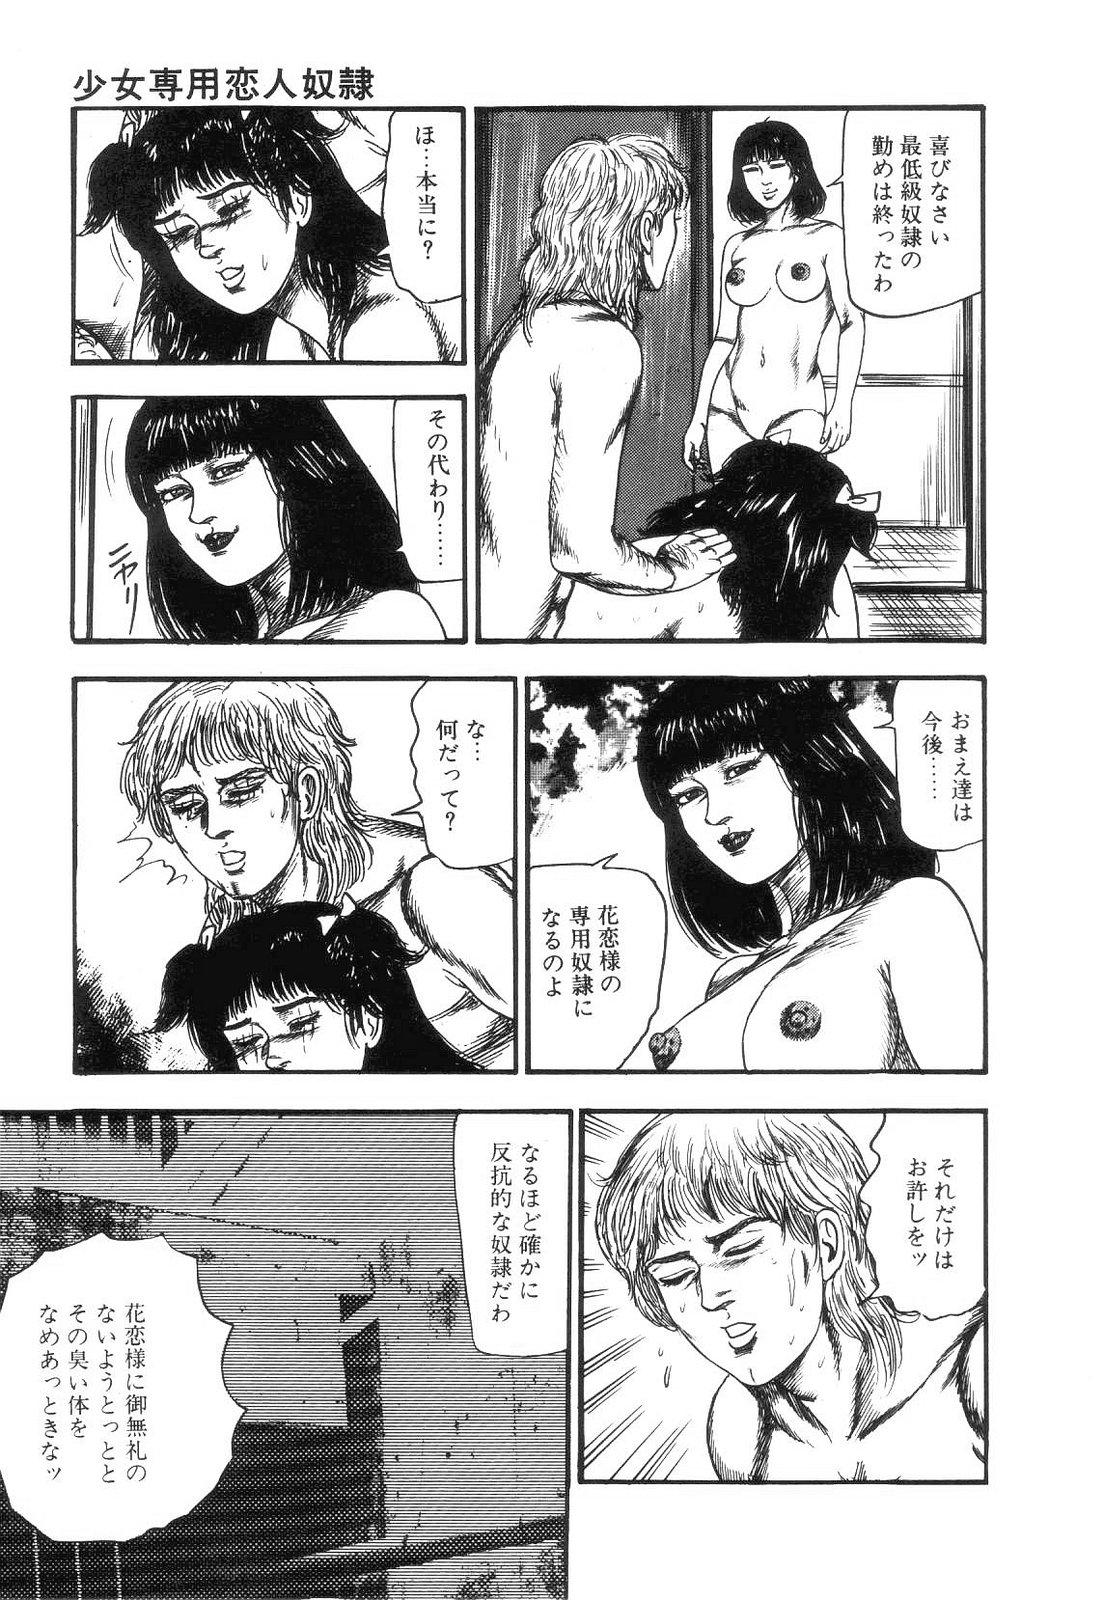 Shiro no Mokushiroku Vol. 4 - Bichiku Karen no Shou 186